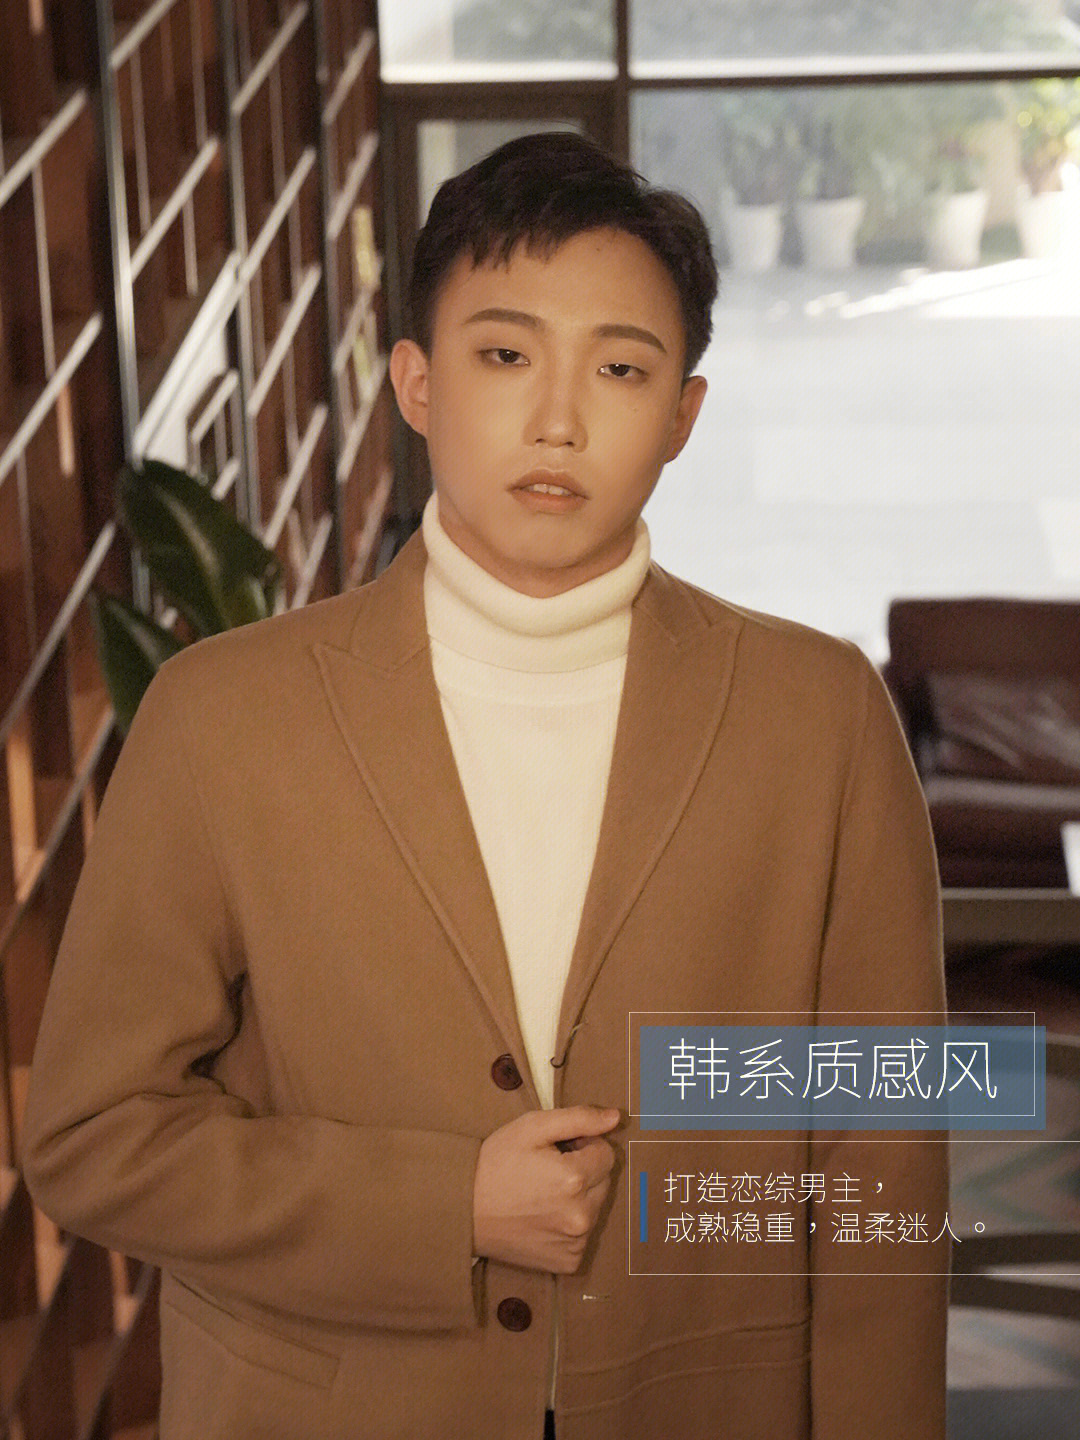 97【简约色系】白色高领毛衣搭配棕色大衣97微卷刘海,温暖典雅